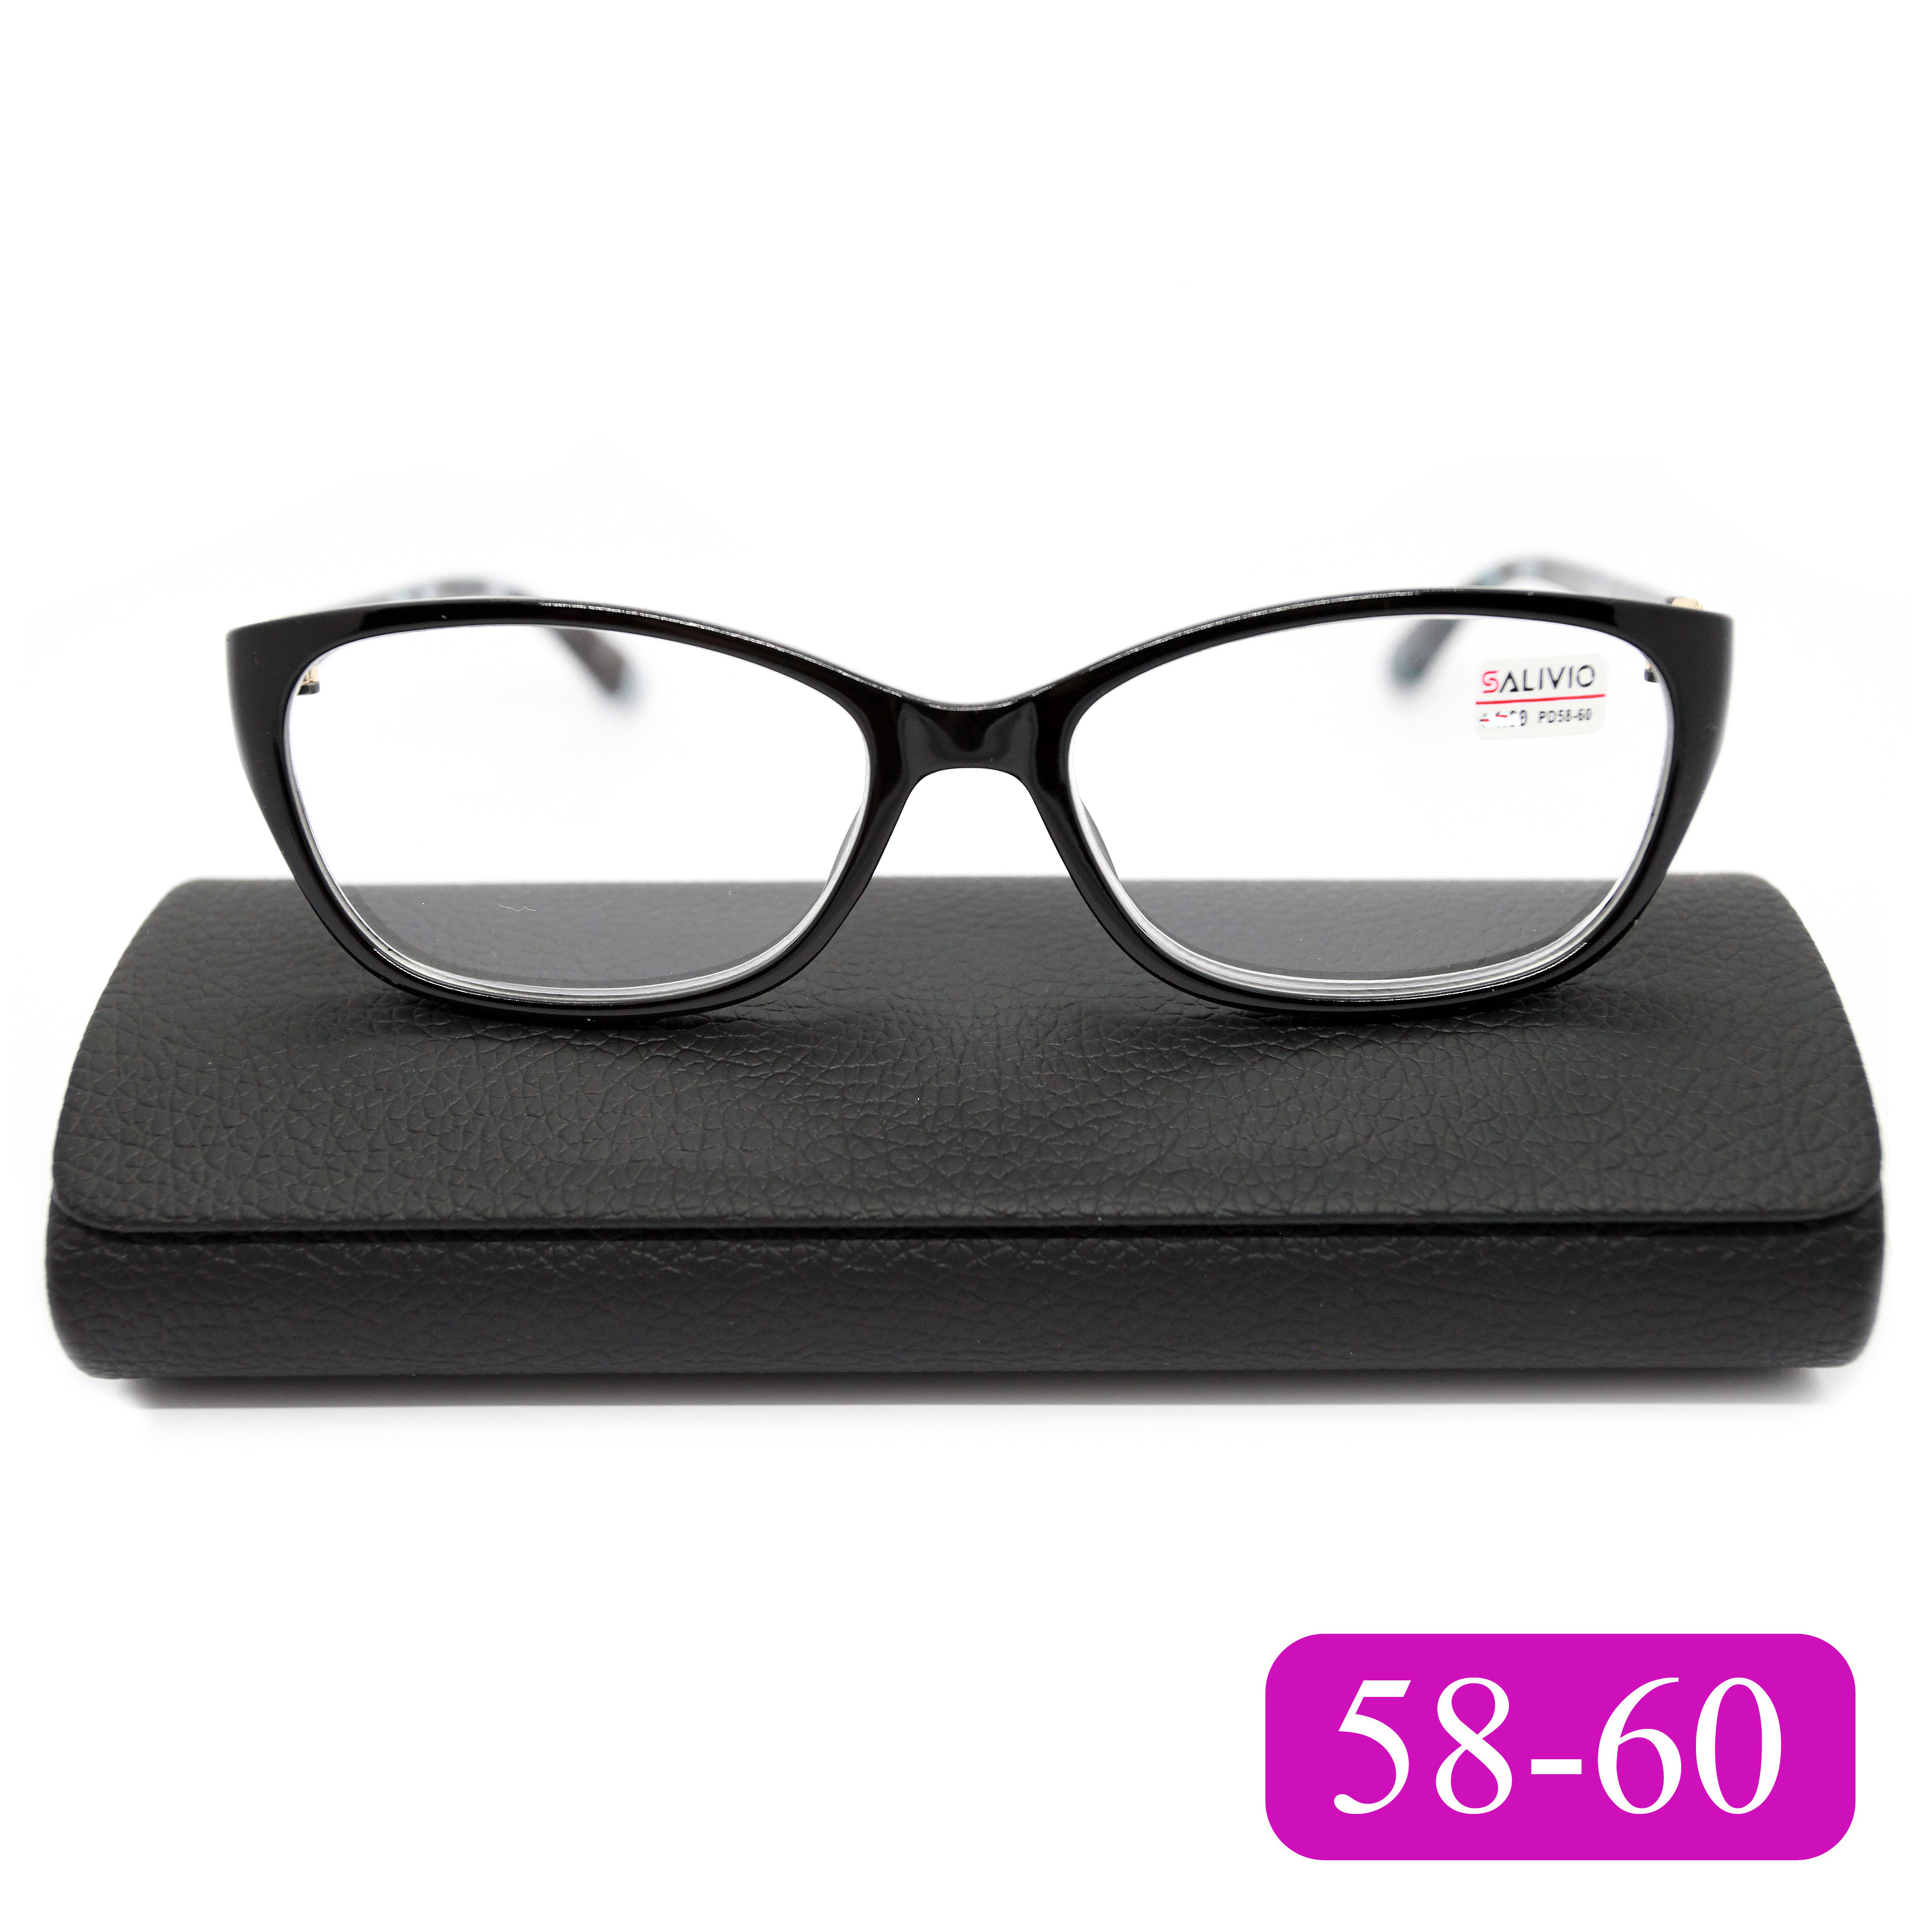 Готовые очки для чтения Salivio 0045 +3,00, c футляром, цвет черный, РЦ 58-60